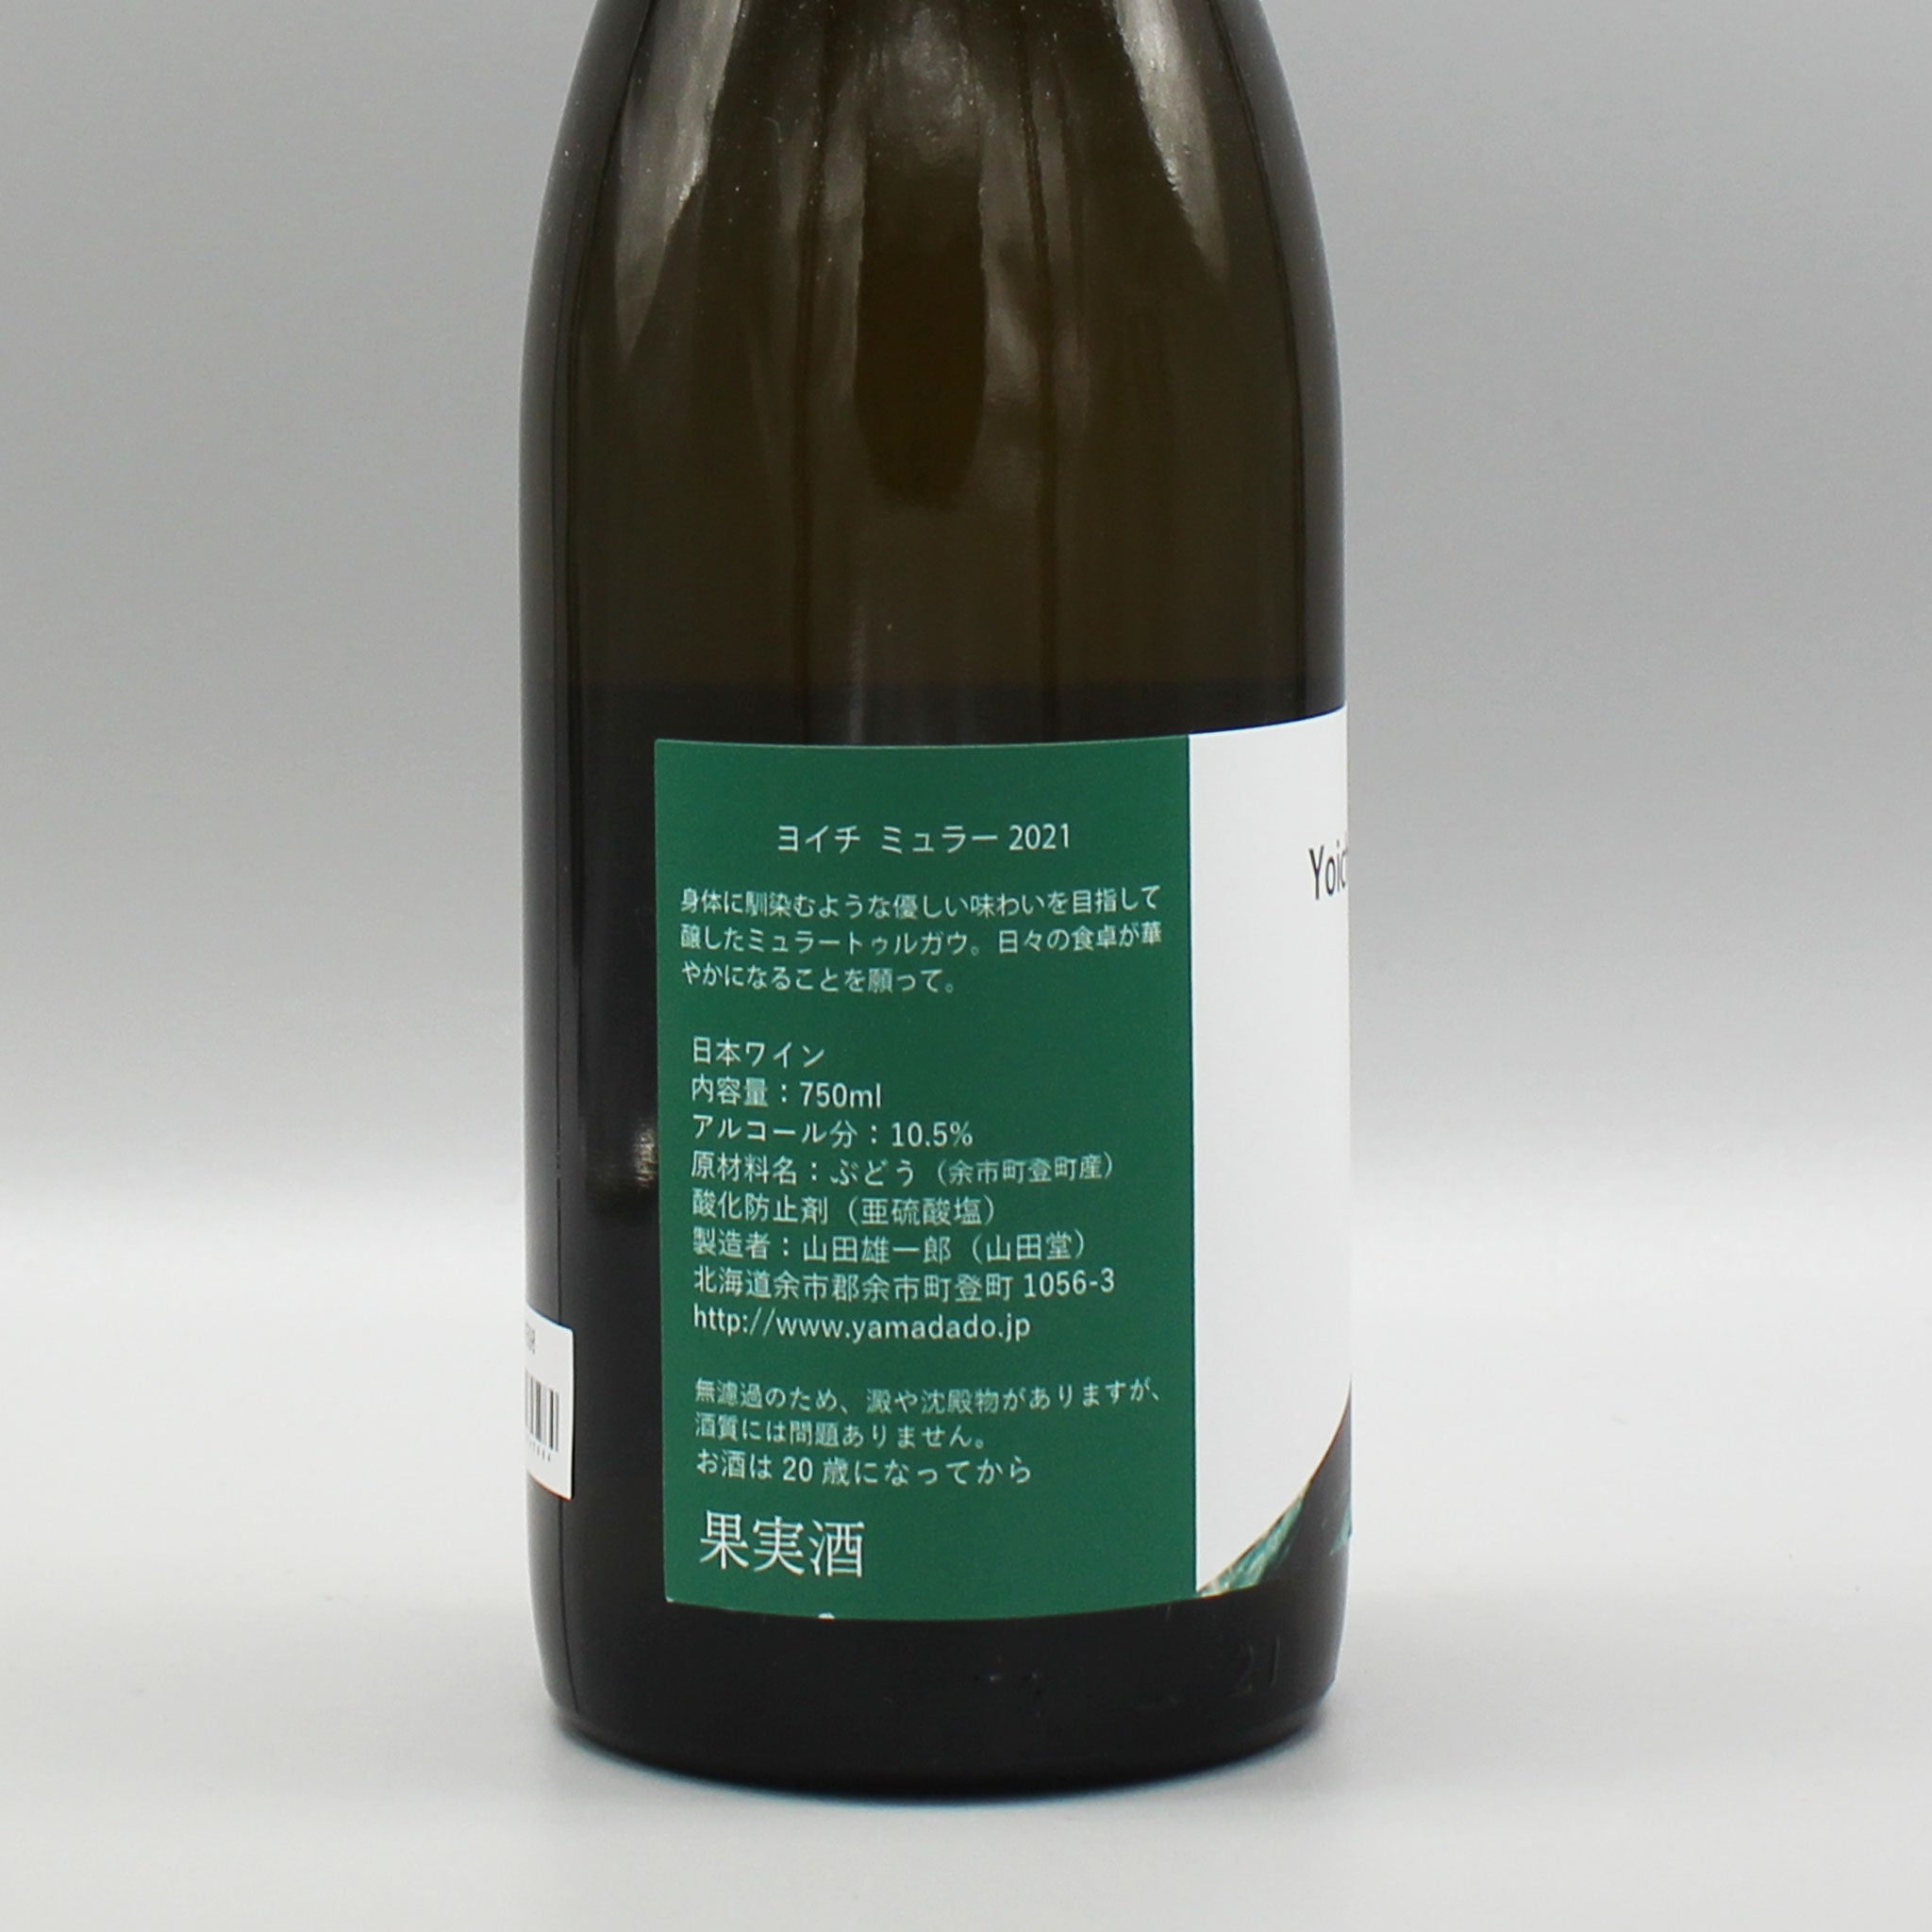 日本ワイン]山田堂 ヨイチミュラー 2021 白 750ml – ナチュラルワイン